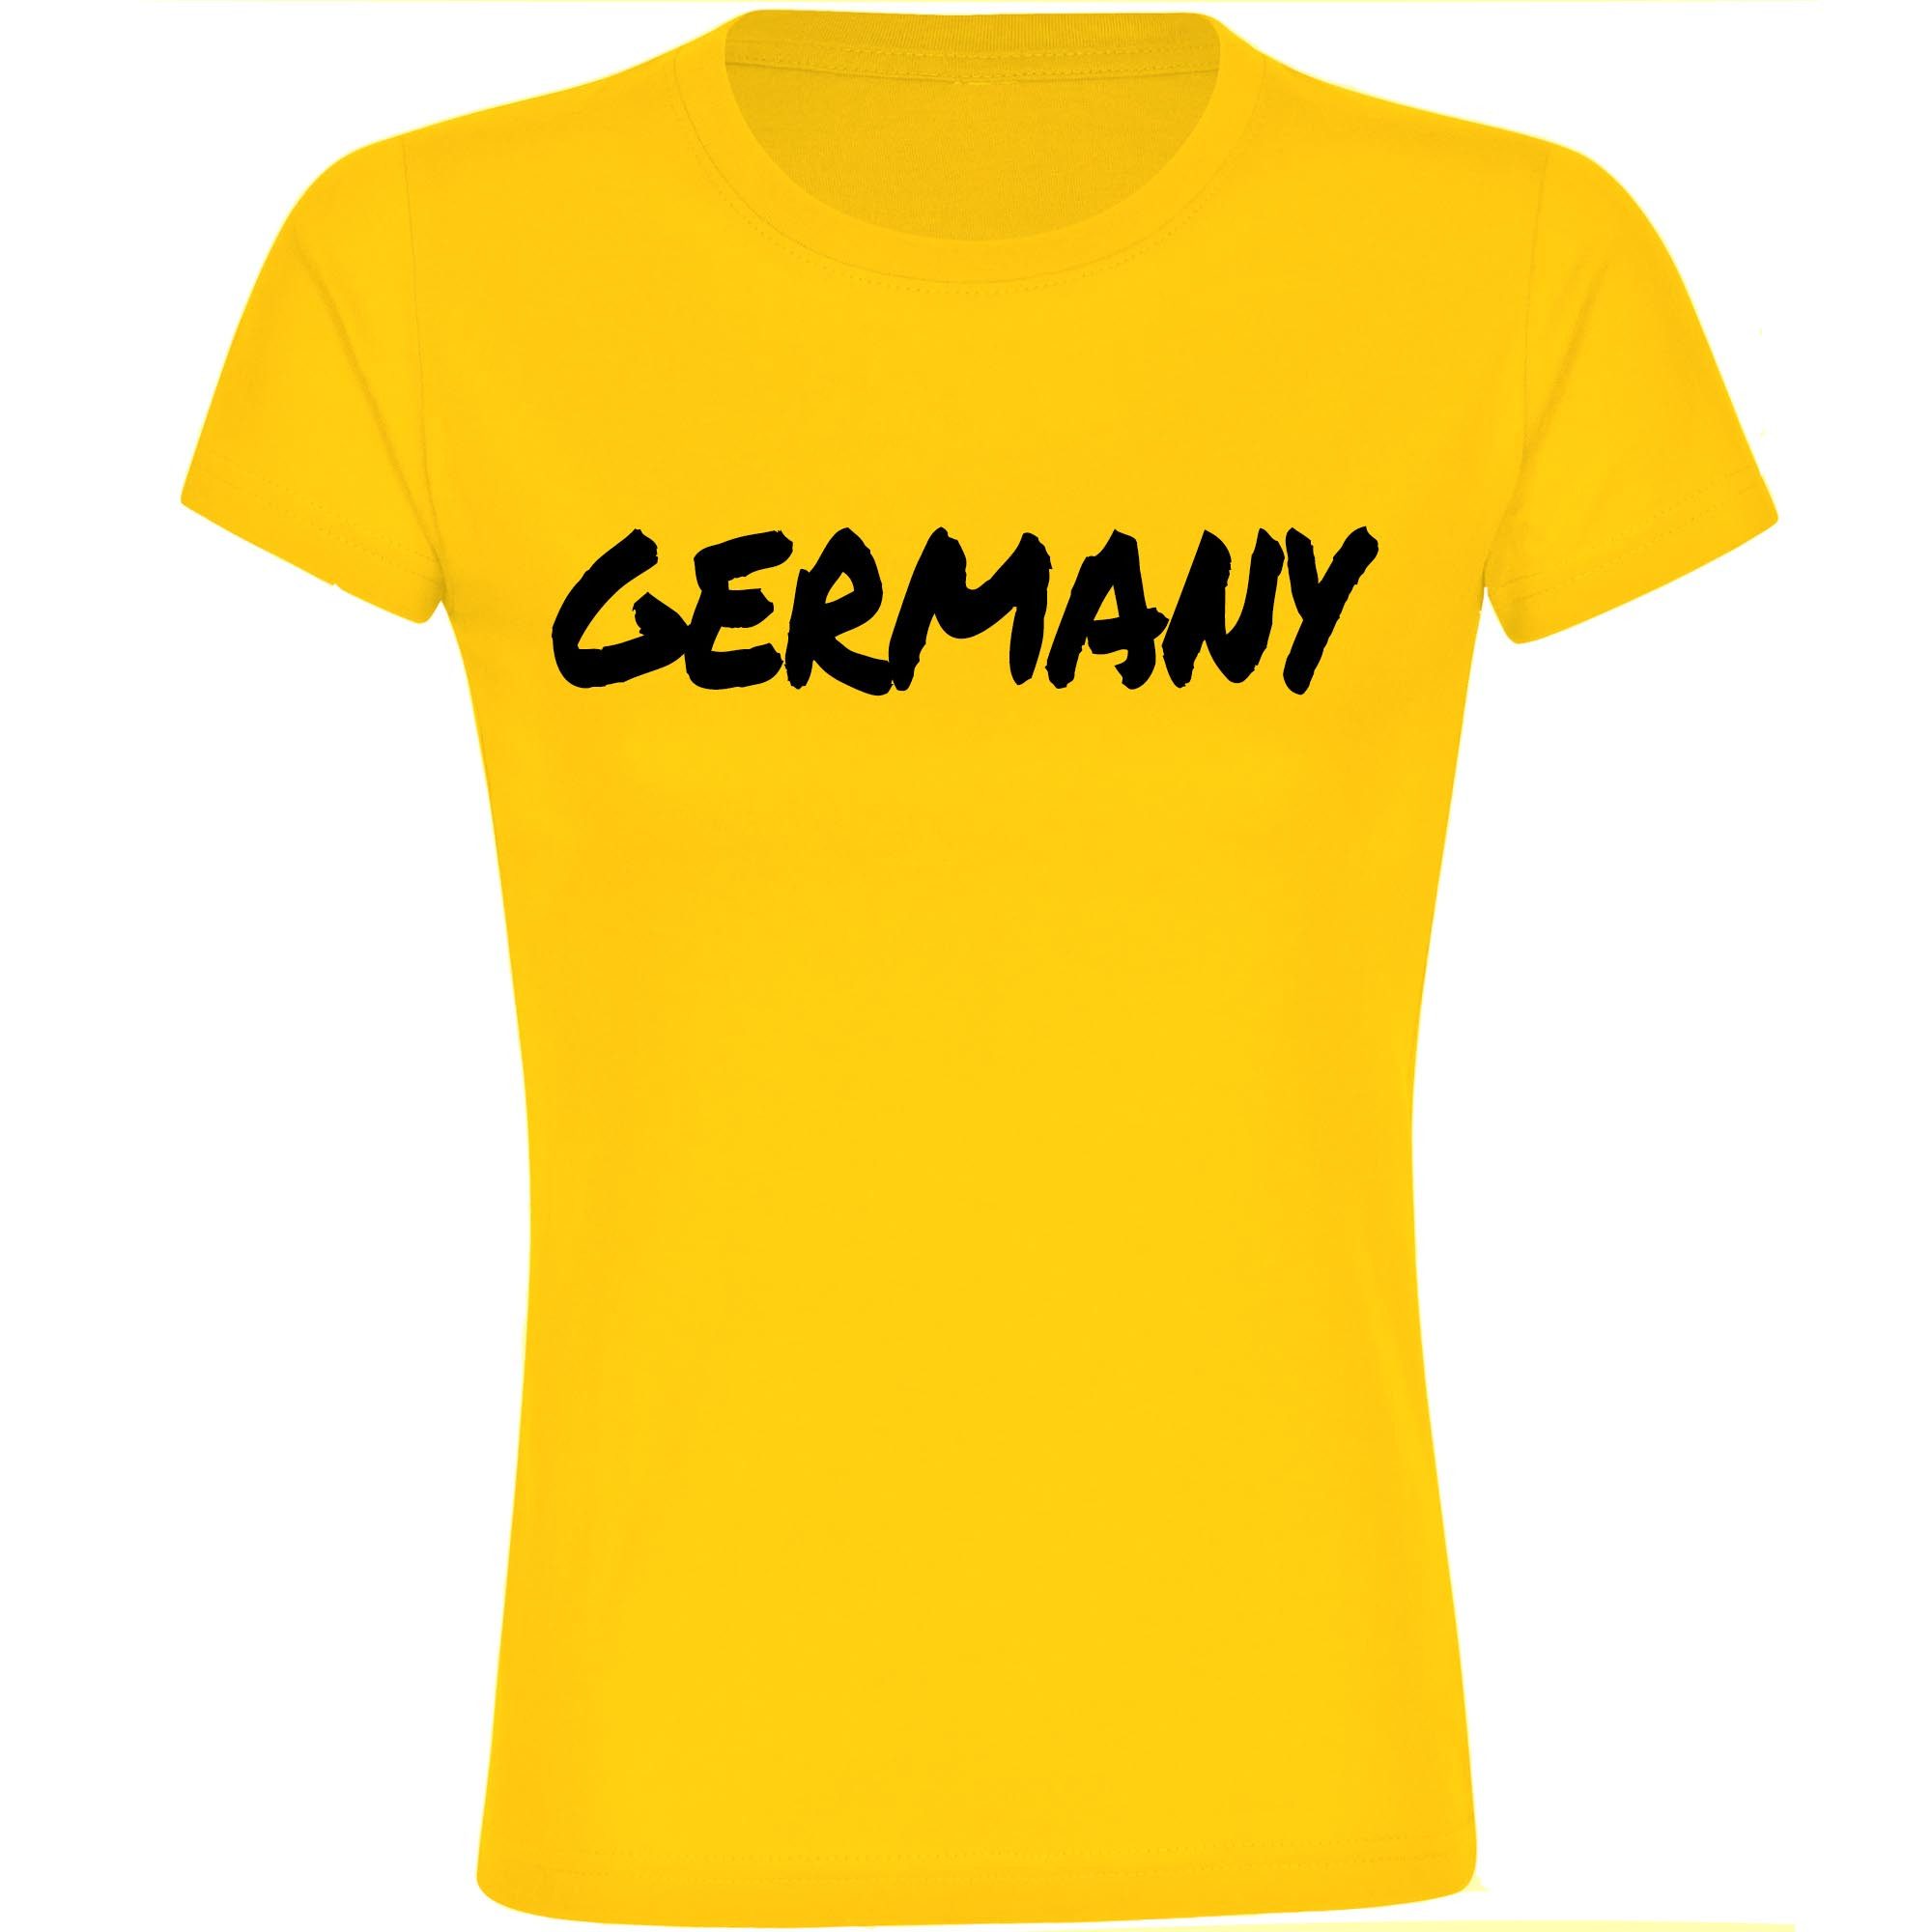 multifanshop T-Shirt Damen Germany - Textmarker - Frauen